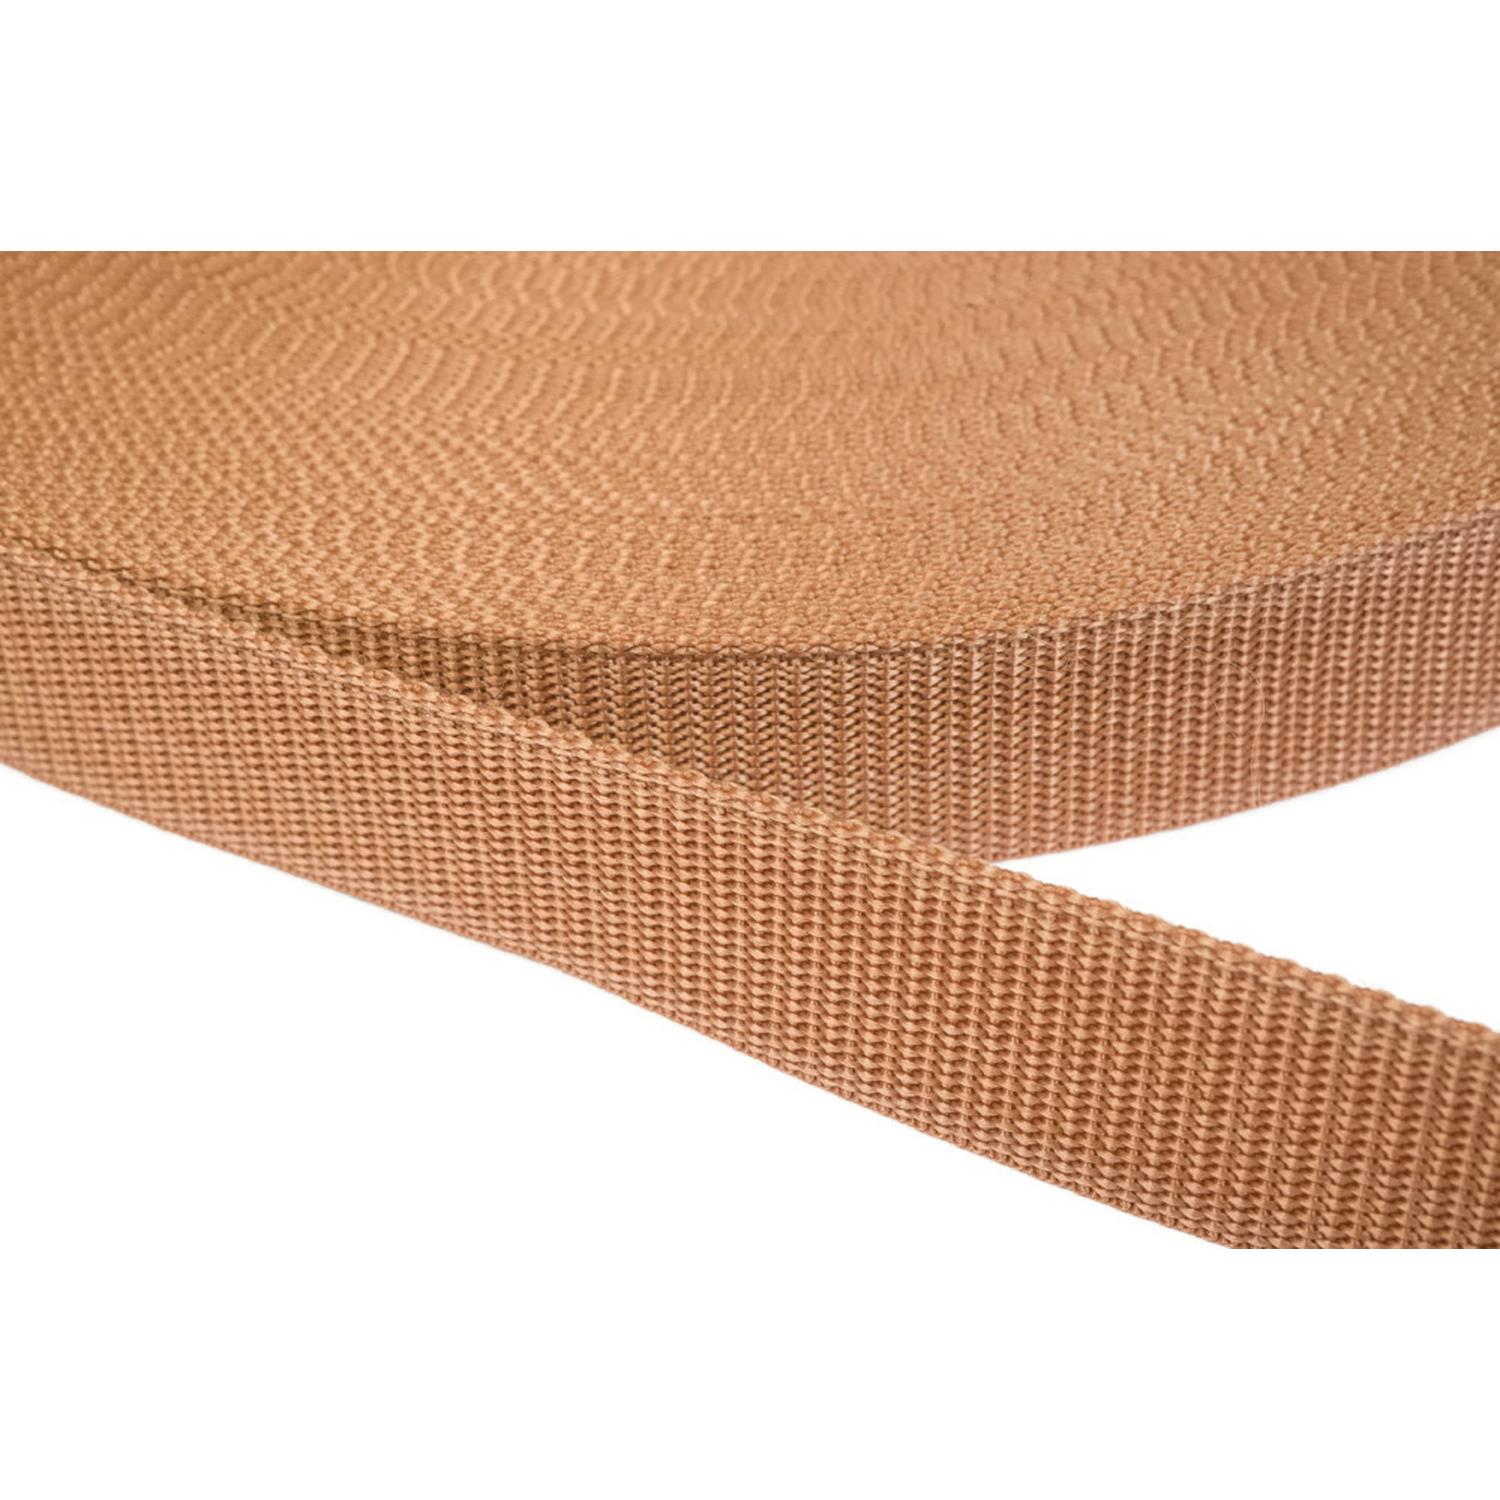 Gurtband 40mm breit aus Polypropylen in 41 Farben 06 - hellbraun 50 Meter